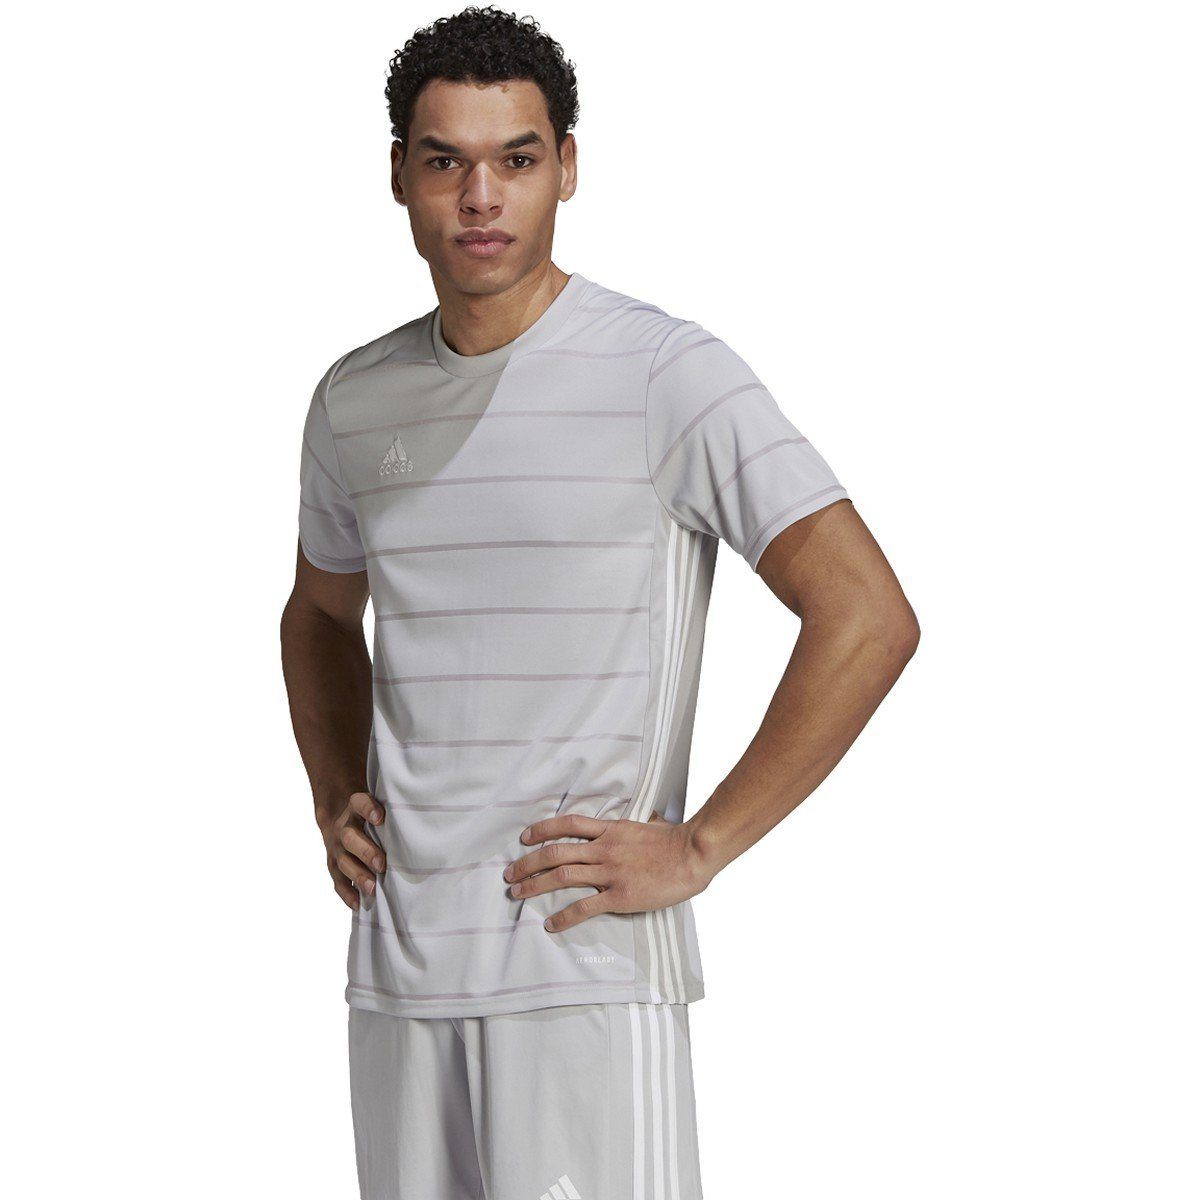 adidas Cardinals Swingman Jersey - Grey, Men's Basketball